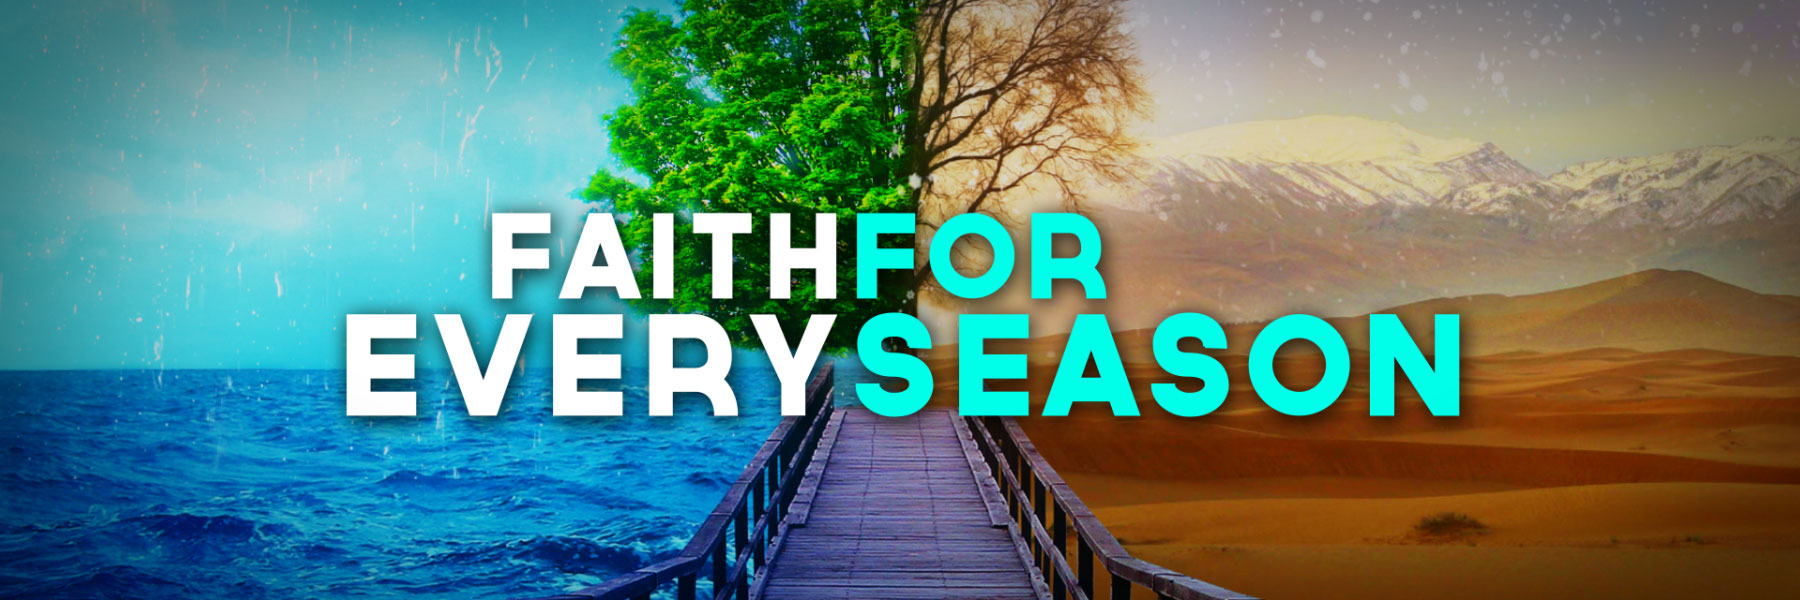 Faith for Every Season Series